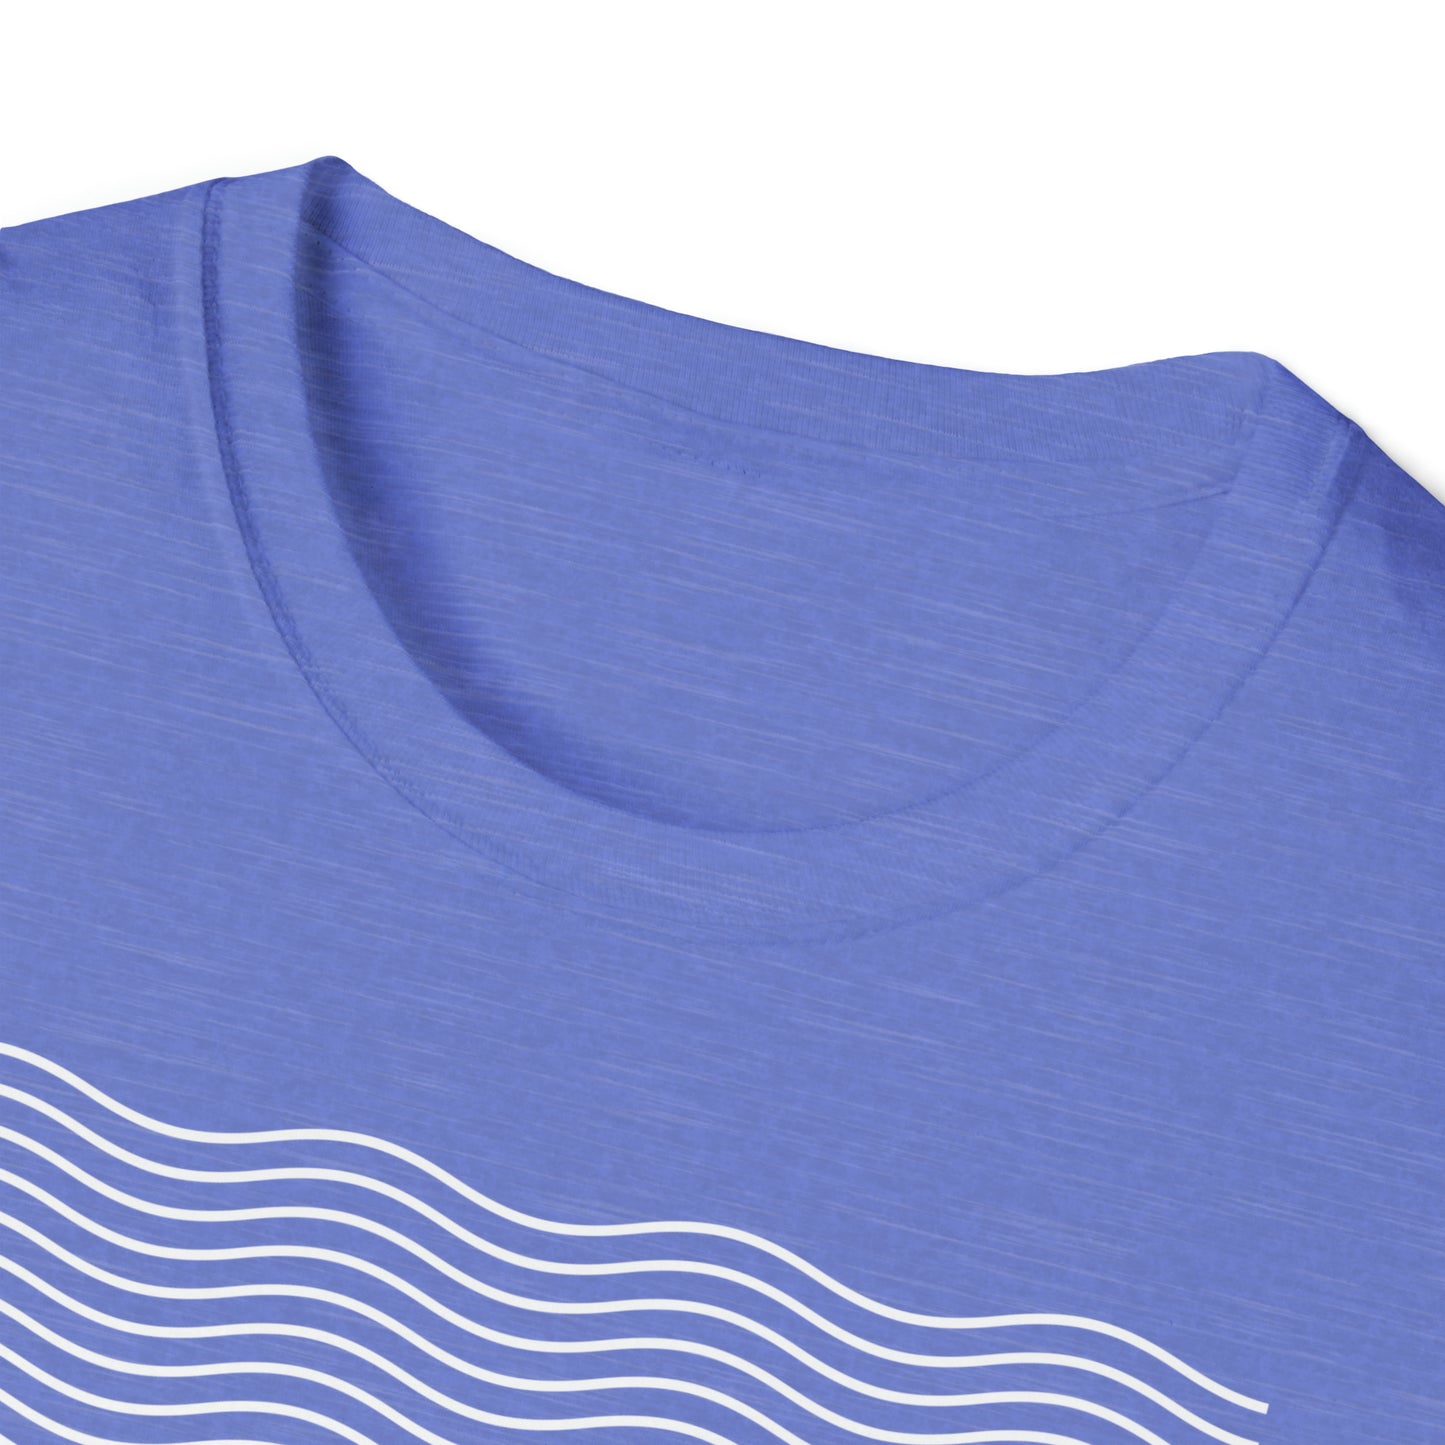 MADE NEW - Baptism Shirt - Unisex Softstyle T-Shirt